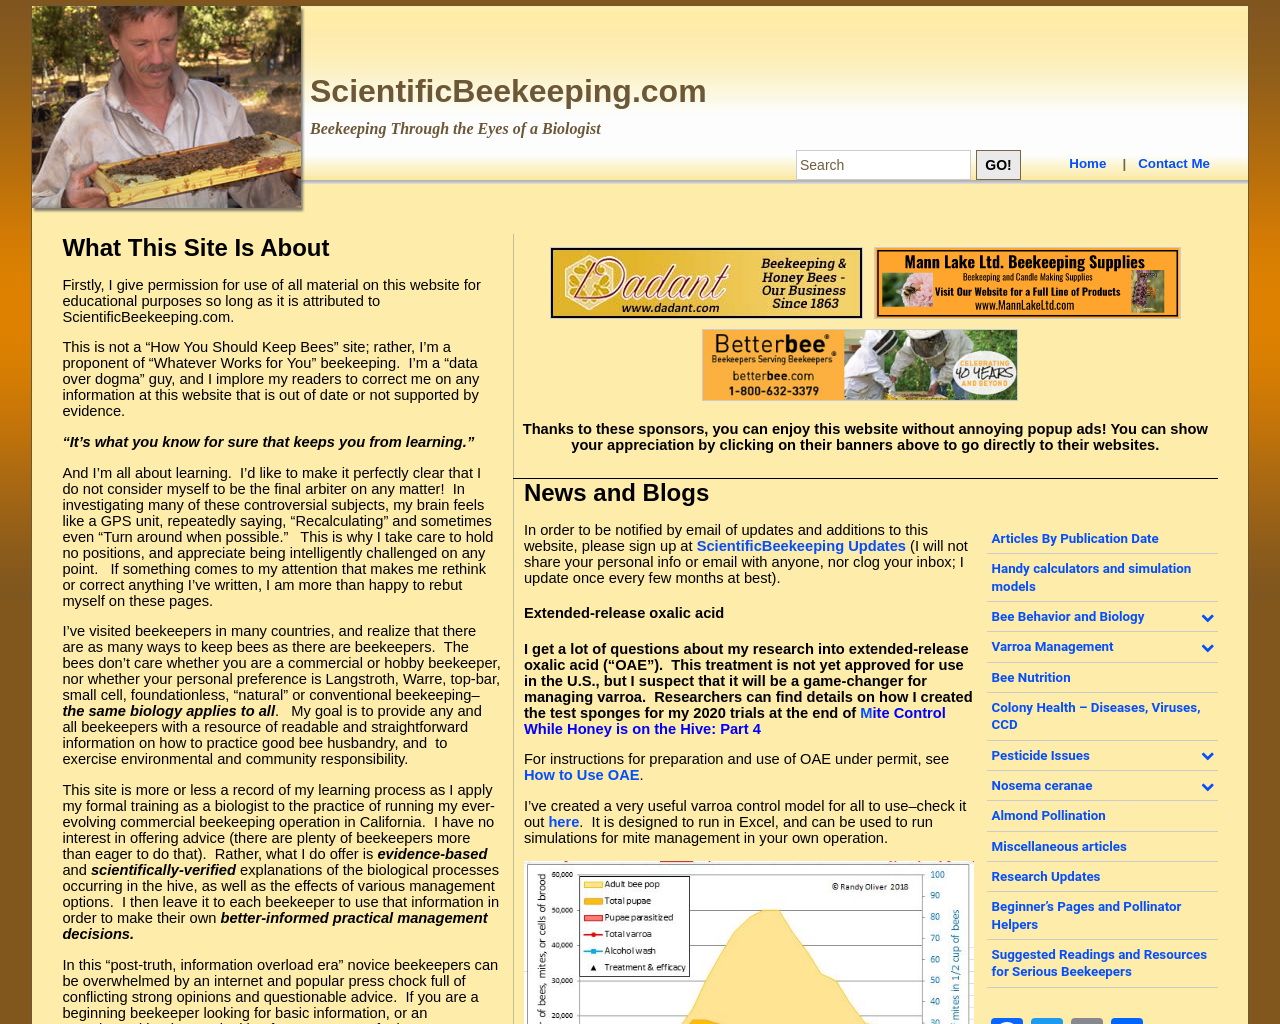 scientificbeekeeping.com